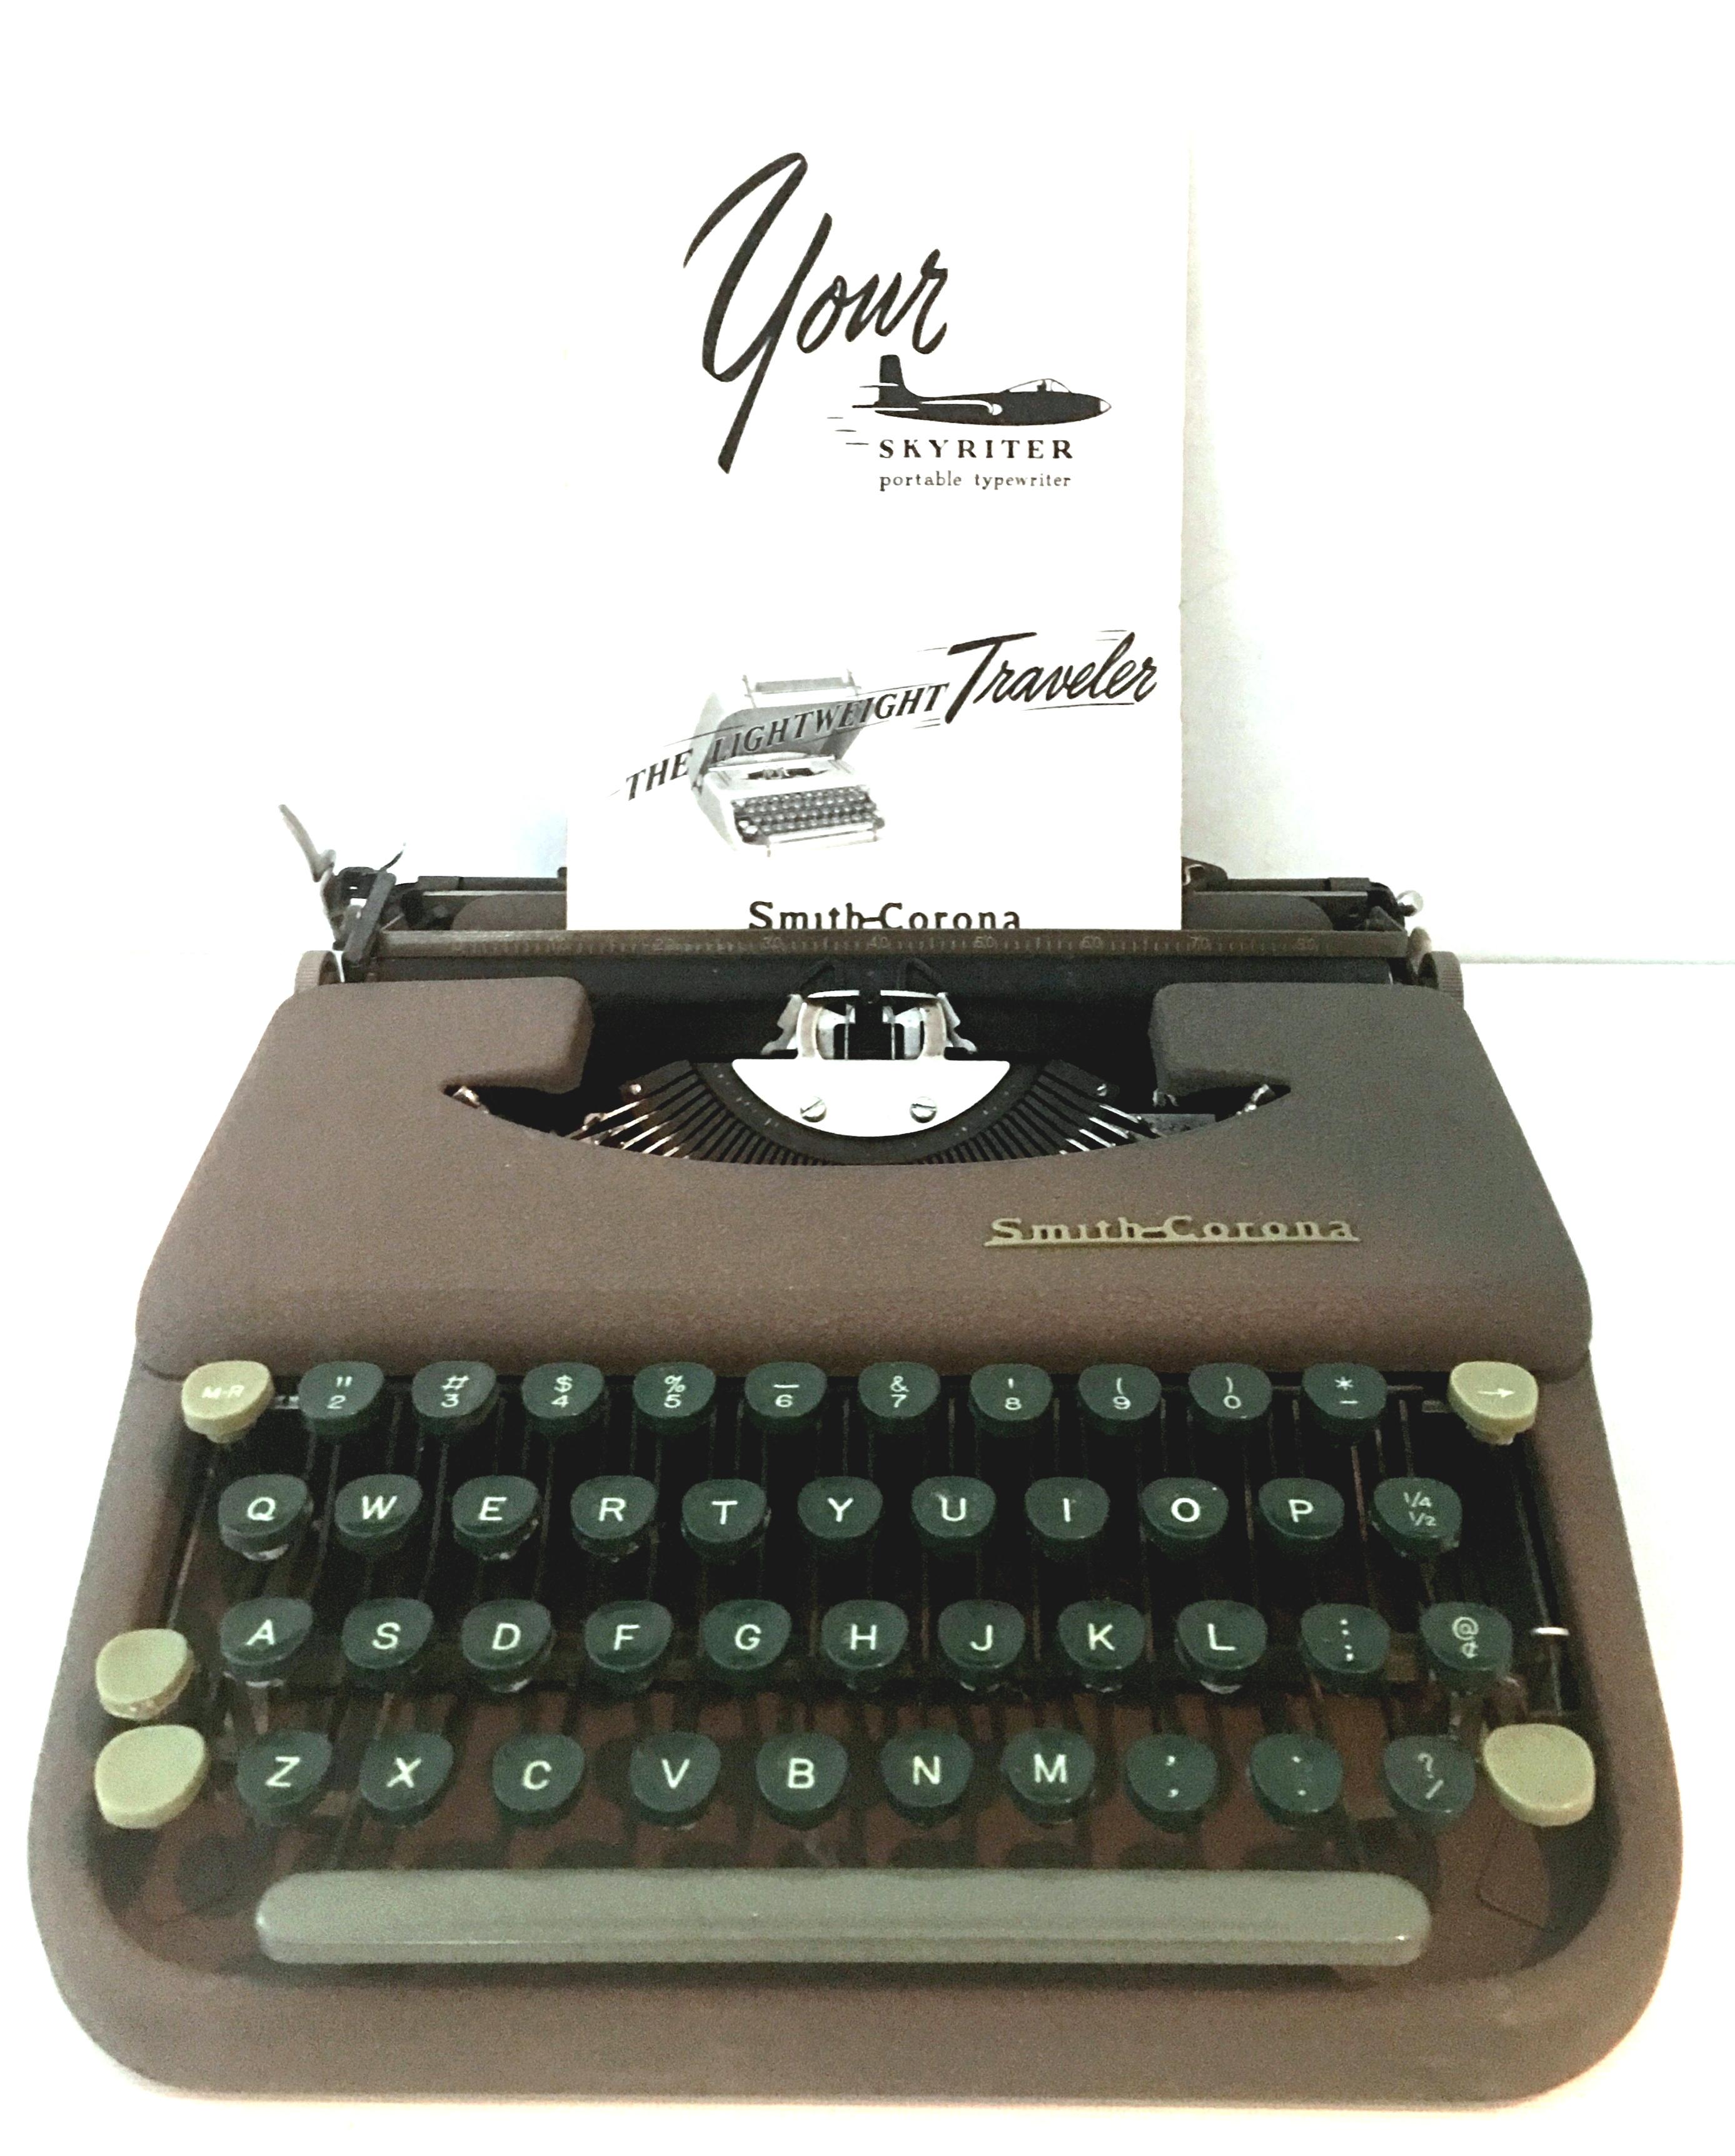 1949 Portable typewriter, 